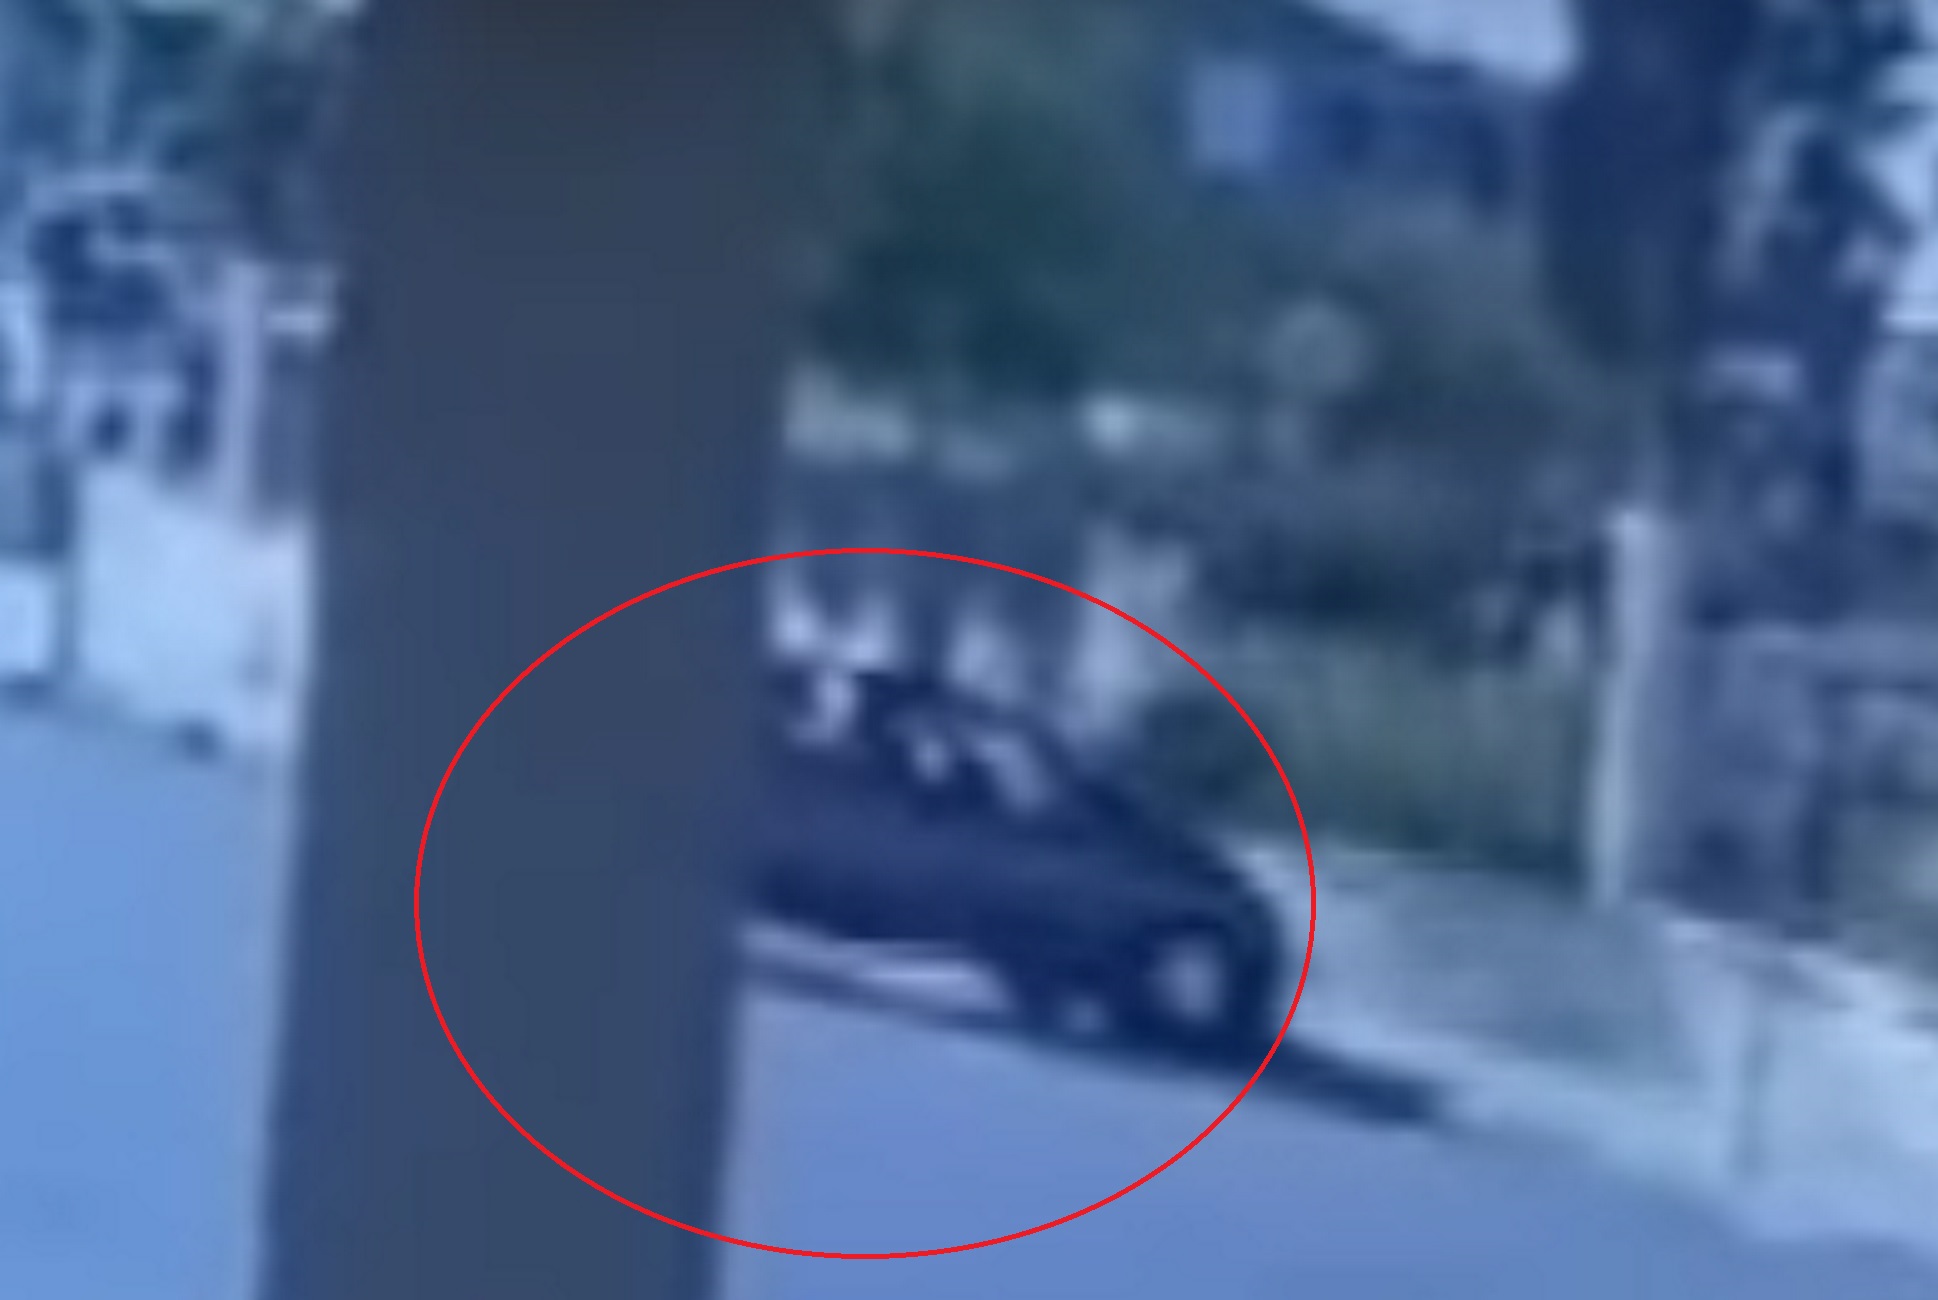 Μεσολόγγι: Βίντεο με αυτοκίνητο να γκρεμίζει με την όπισθεν την περίφραξη του νοσοκομείου